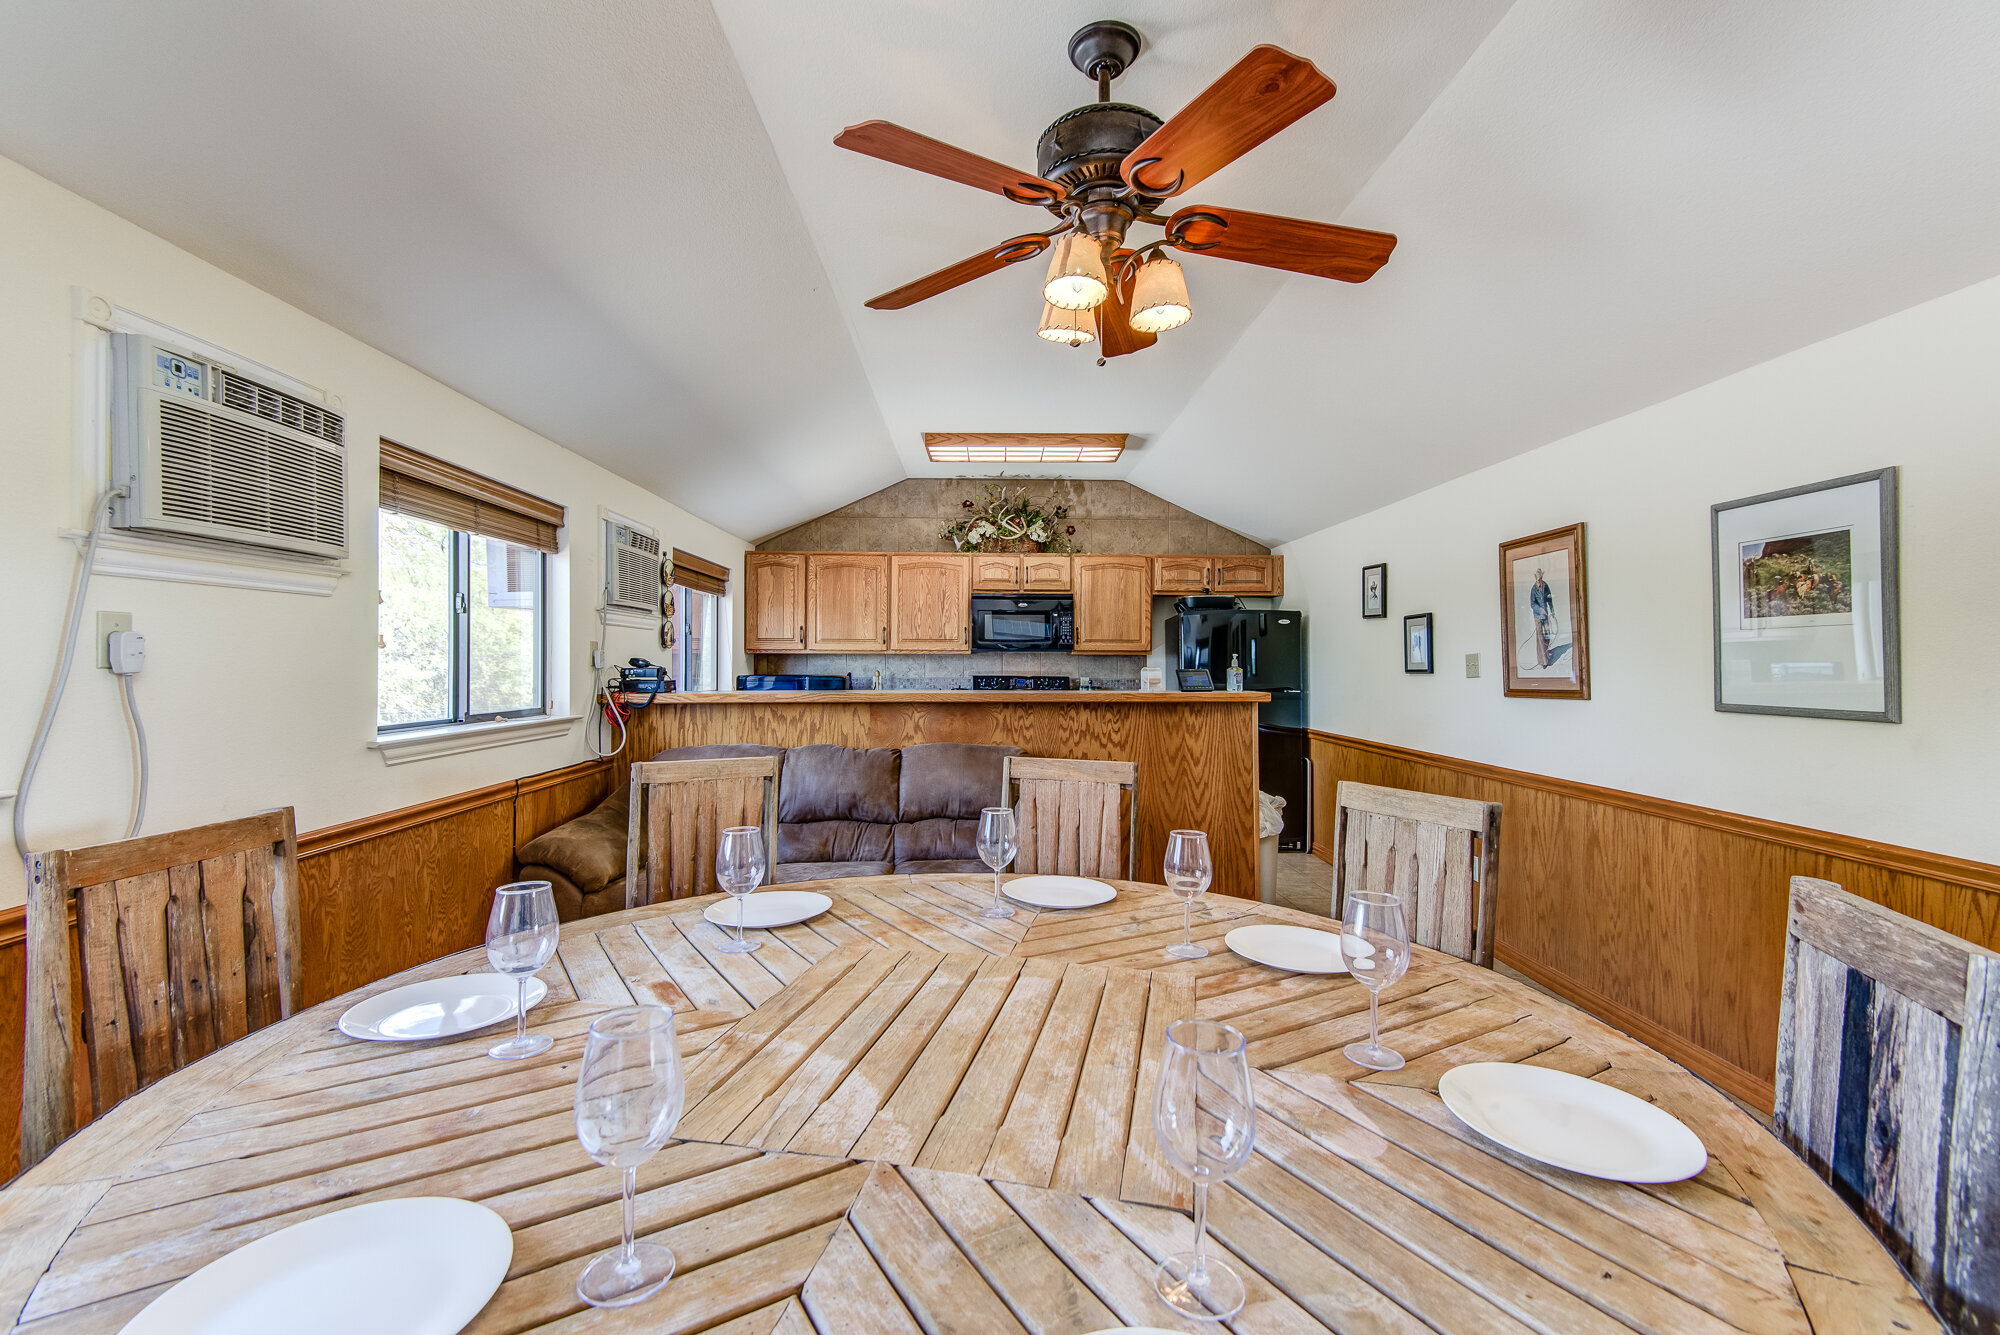 Area 39 cabins, texas airbnb, kitchen, DSC_8636_.jpg